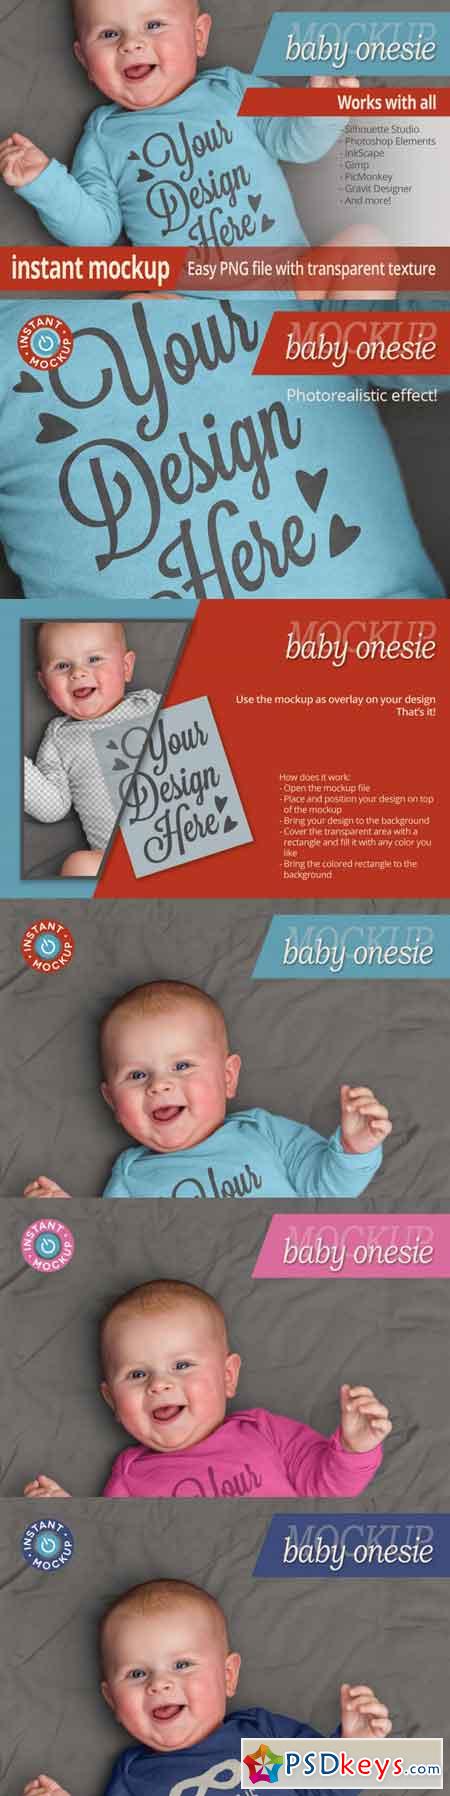 Instant photorealistic baby onesie mockup  3470106